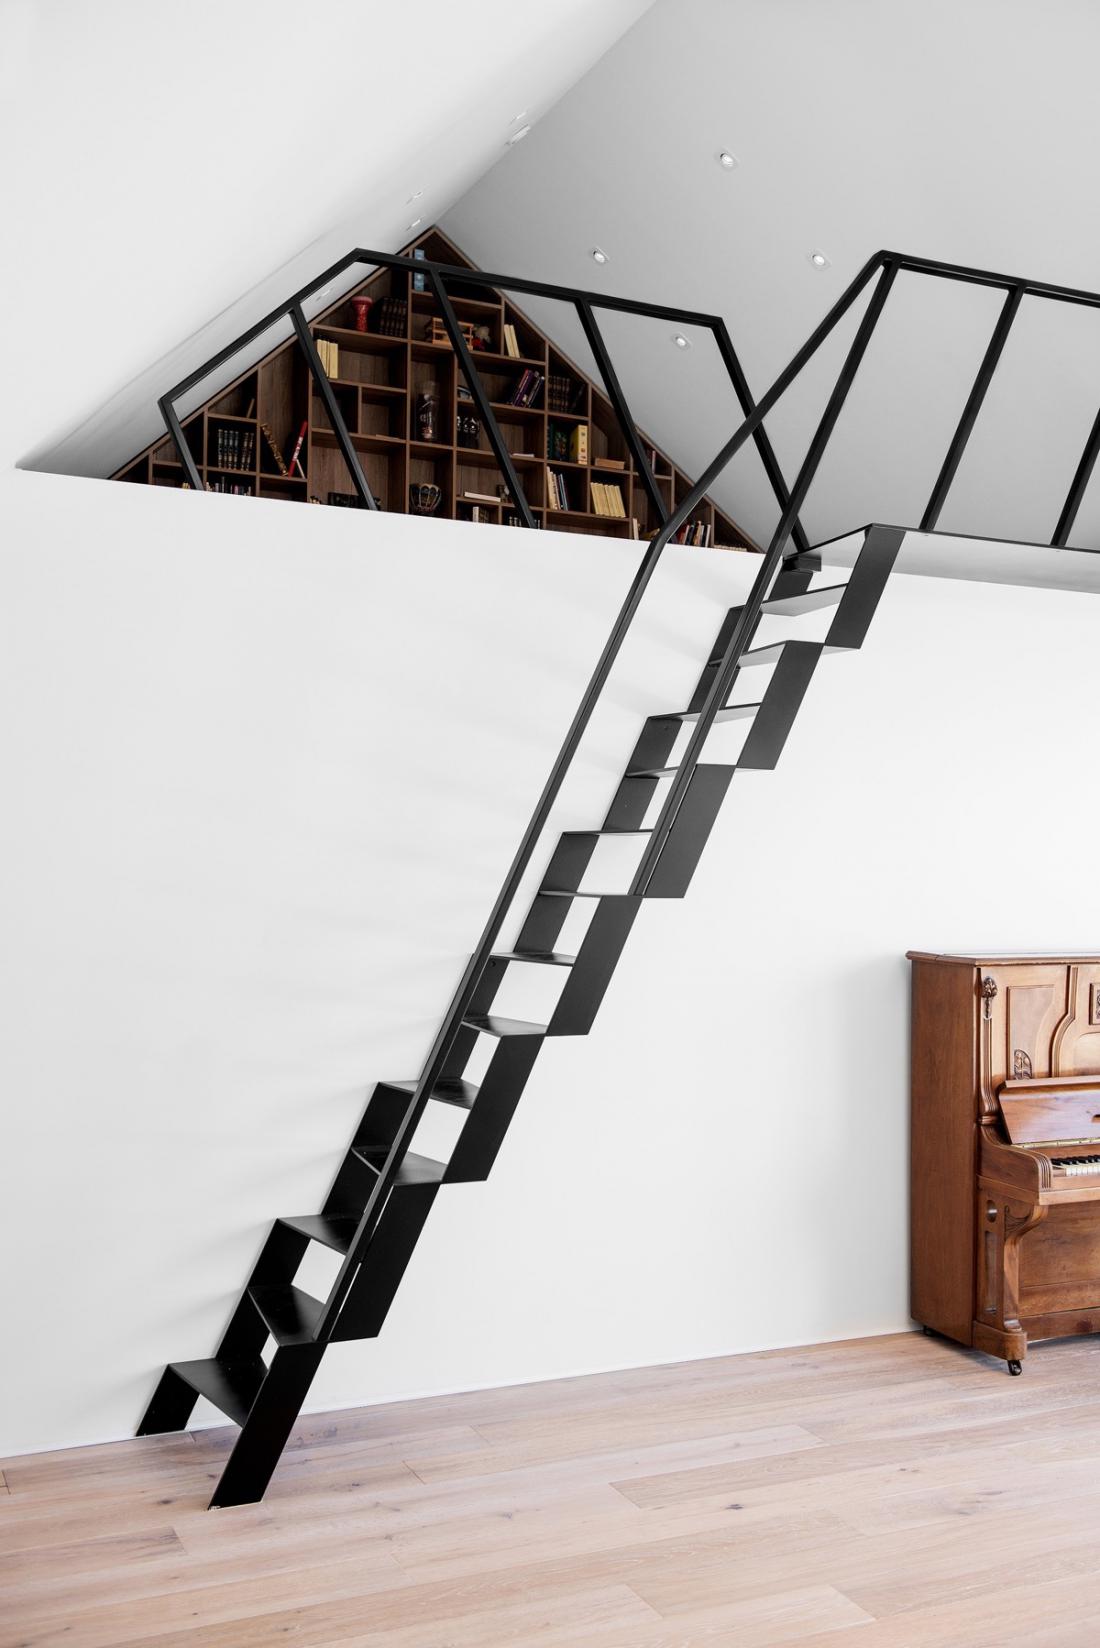 Moderne in vsestranske stopnice, ki delujejo odlično v minimalistično opremljenih domovih.